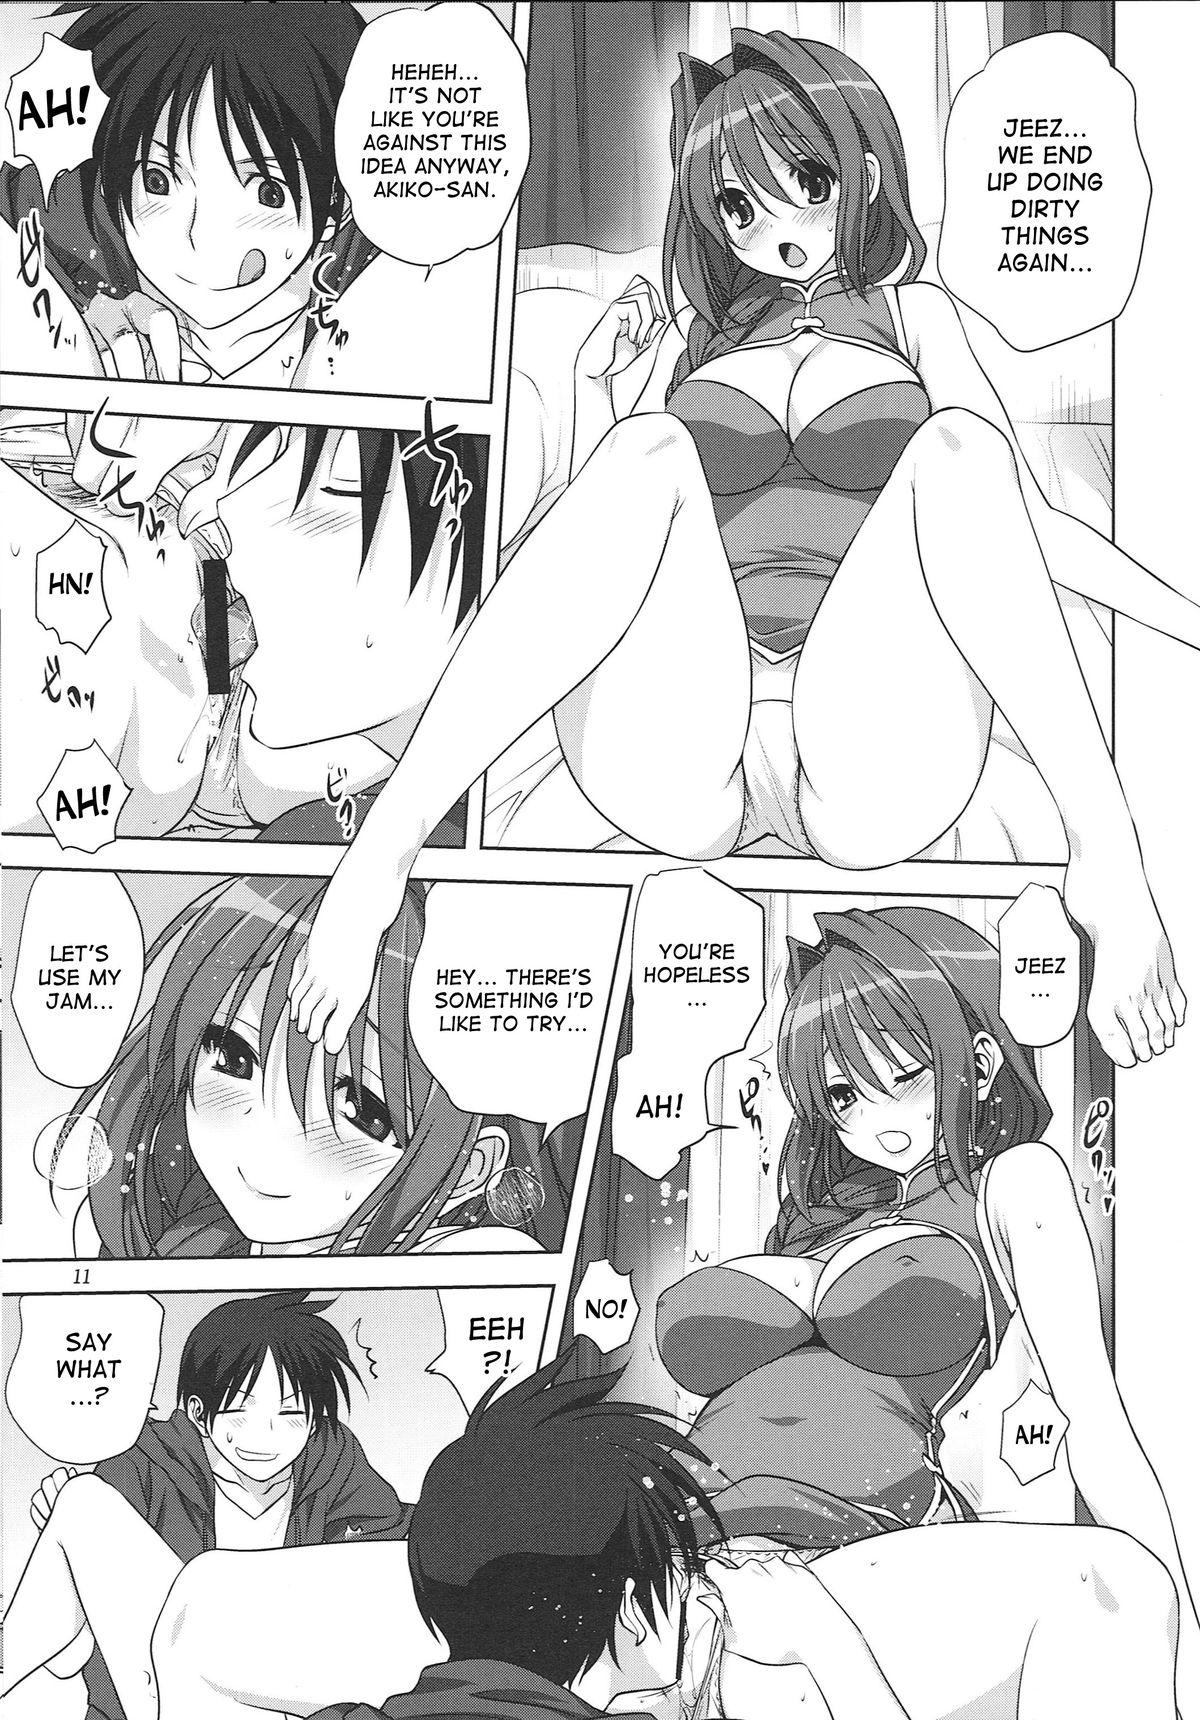 Gorda Akiko-san to Issho 15 - Kanon Stripping - Page 10